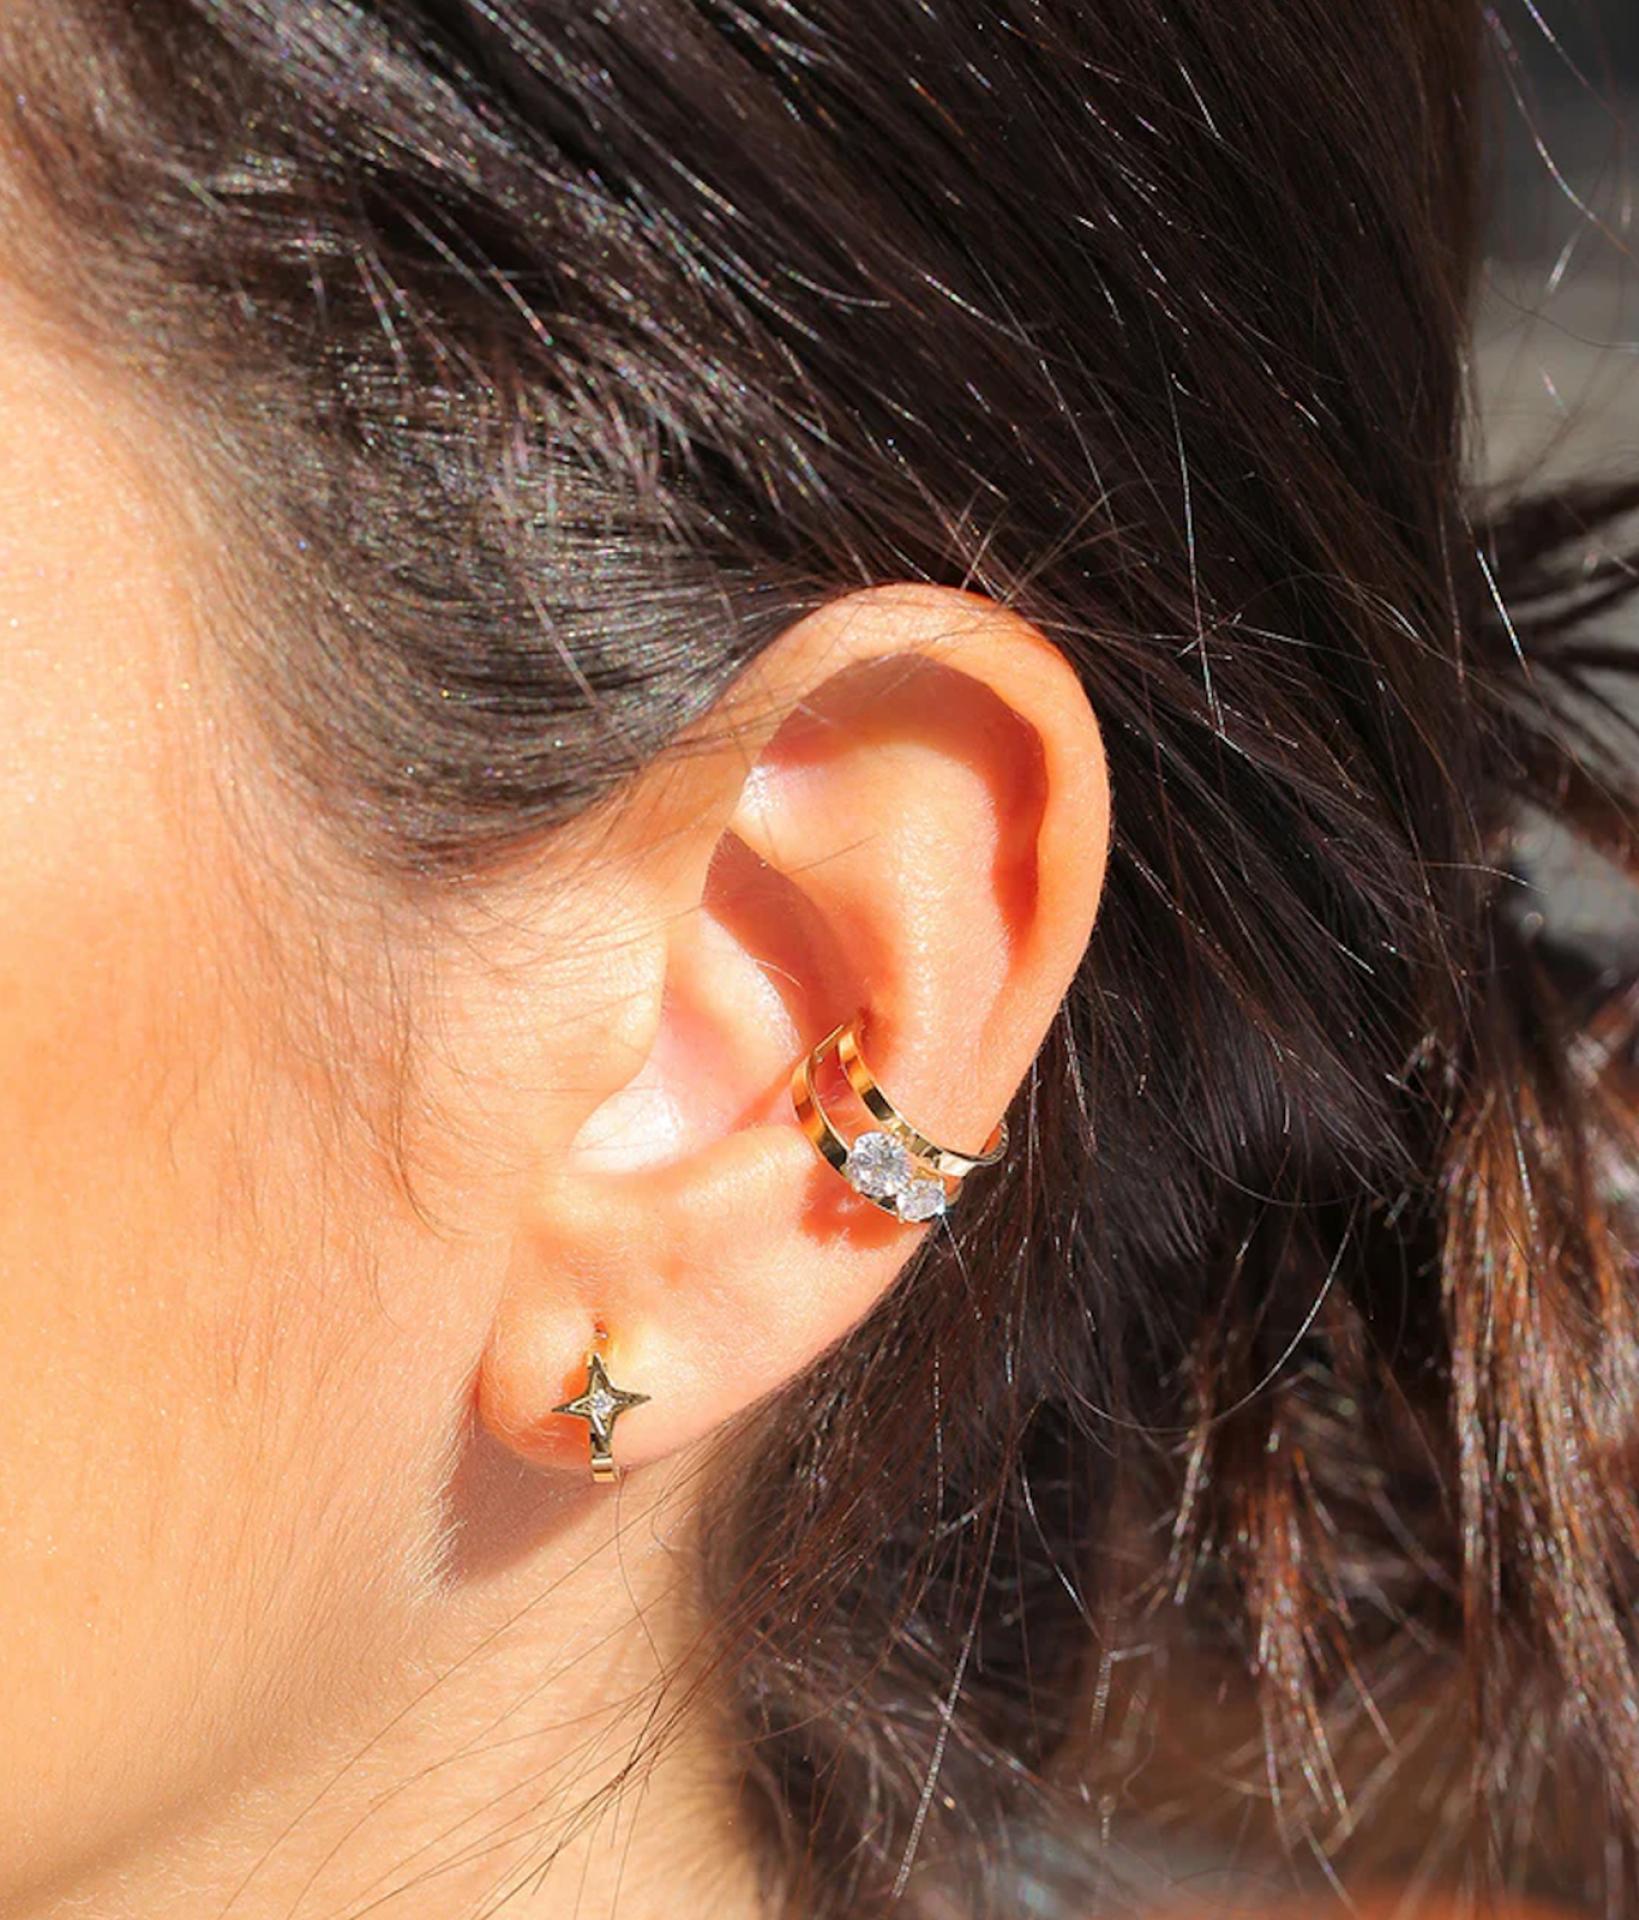 Frau trägt modische Ohrringe von Zag Bijoux, bestehend aus einem Ohrstecker in Stern Form und einem goldenen Earcuff mit Zirkonia Stein